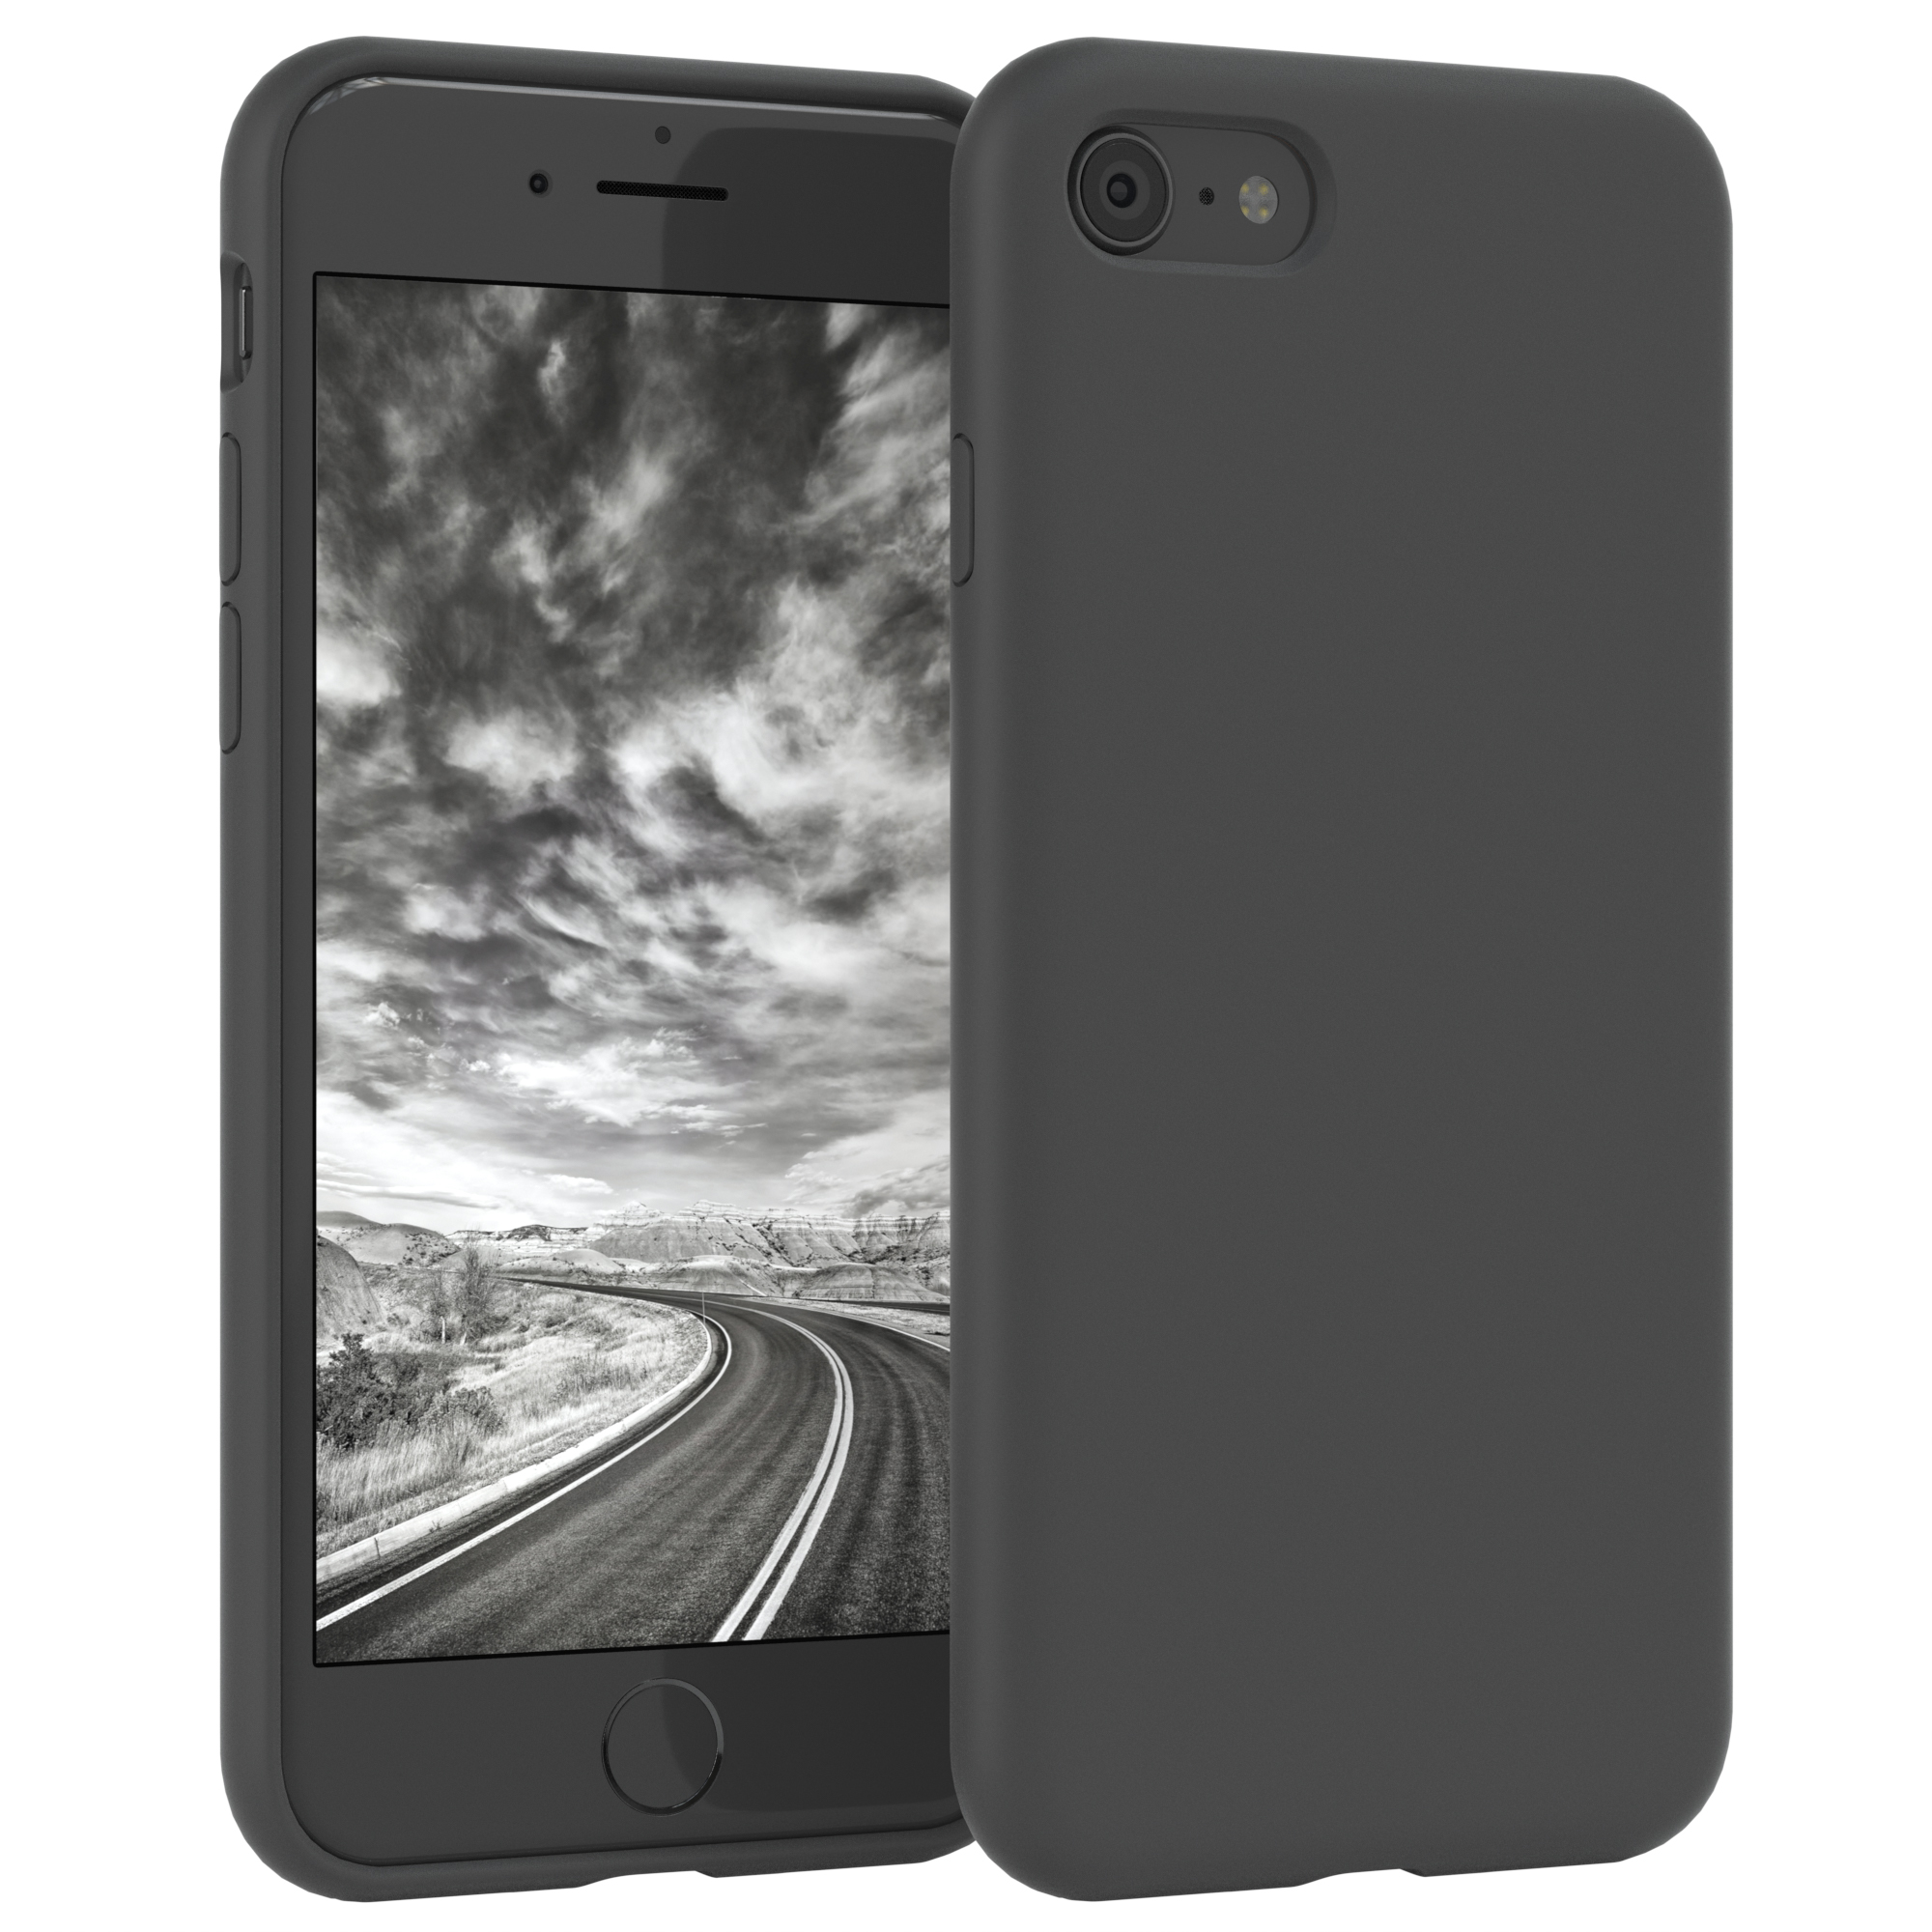 Handycase, Grau Silikon iPhone / CASE 8, Anthrazit 2020, Premium 7 SE EAZY iPhone 2022 / Backcover, SE Apple,